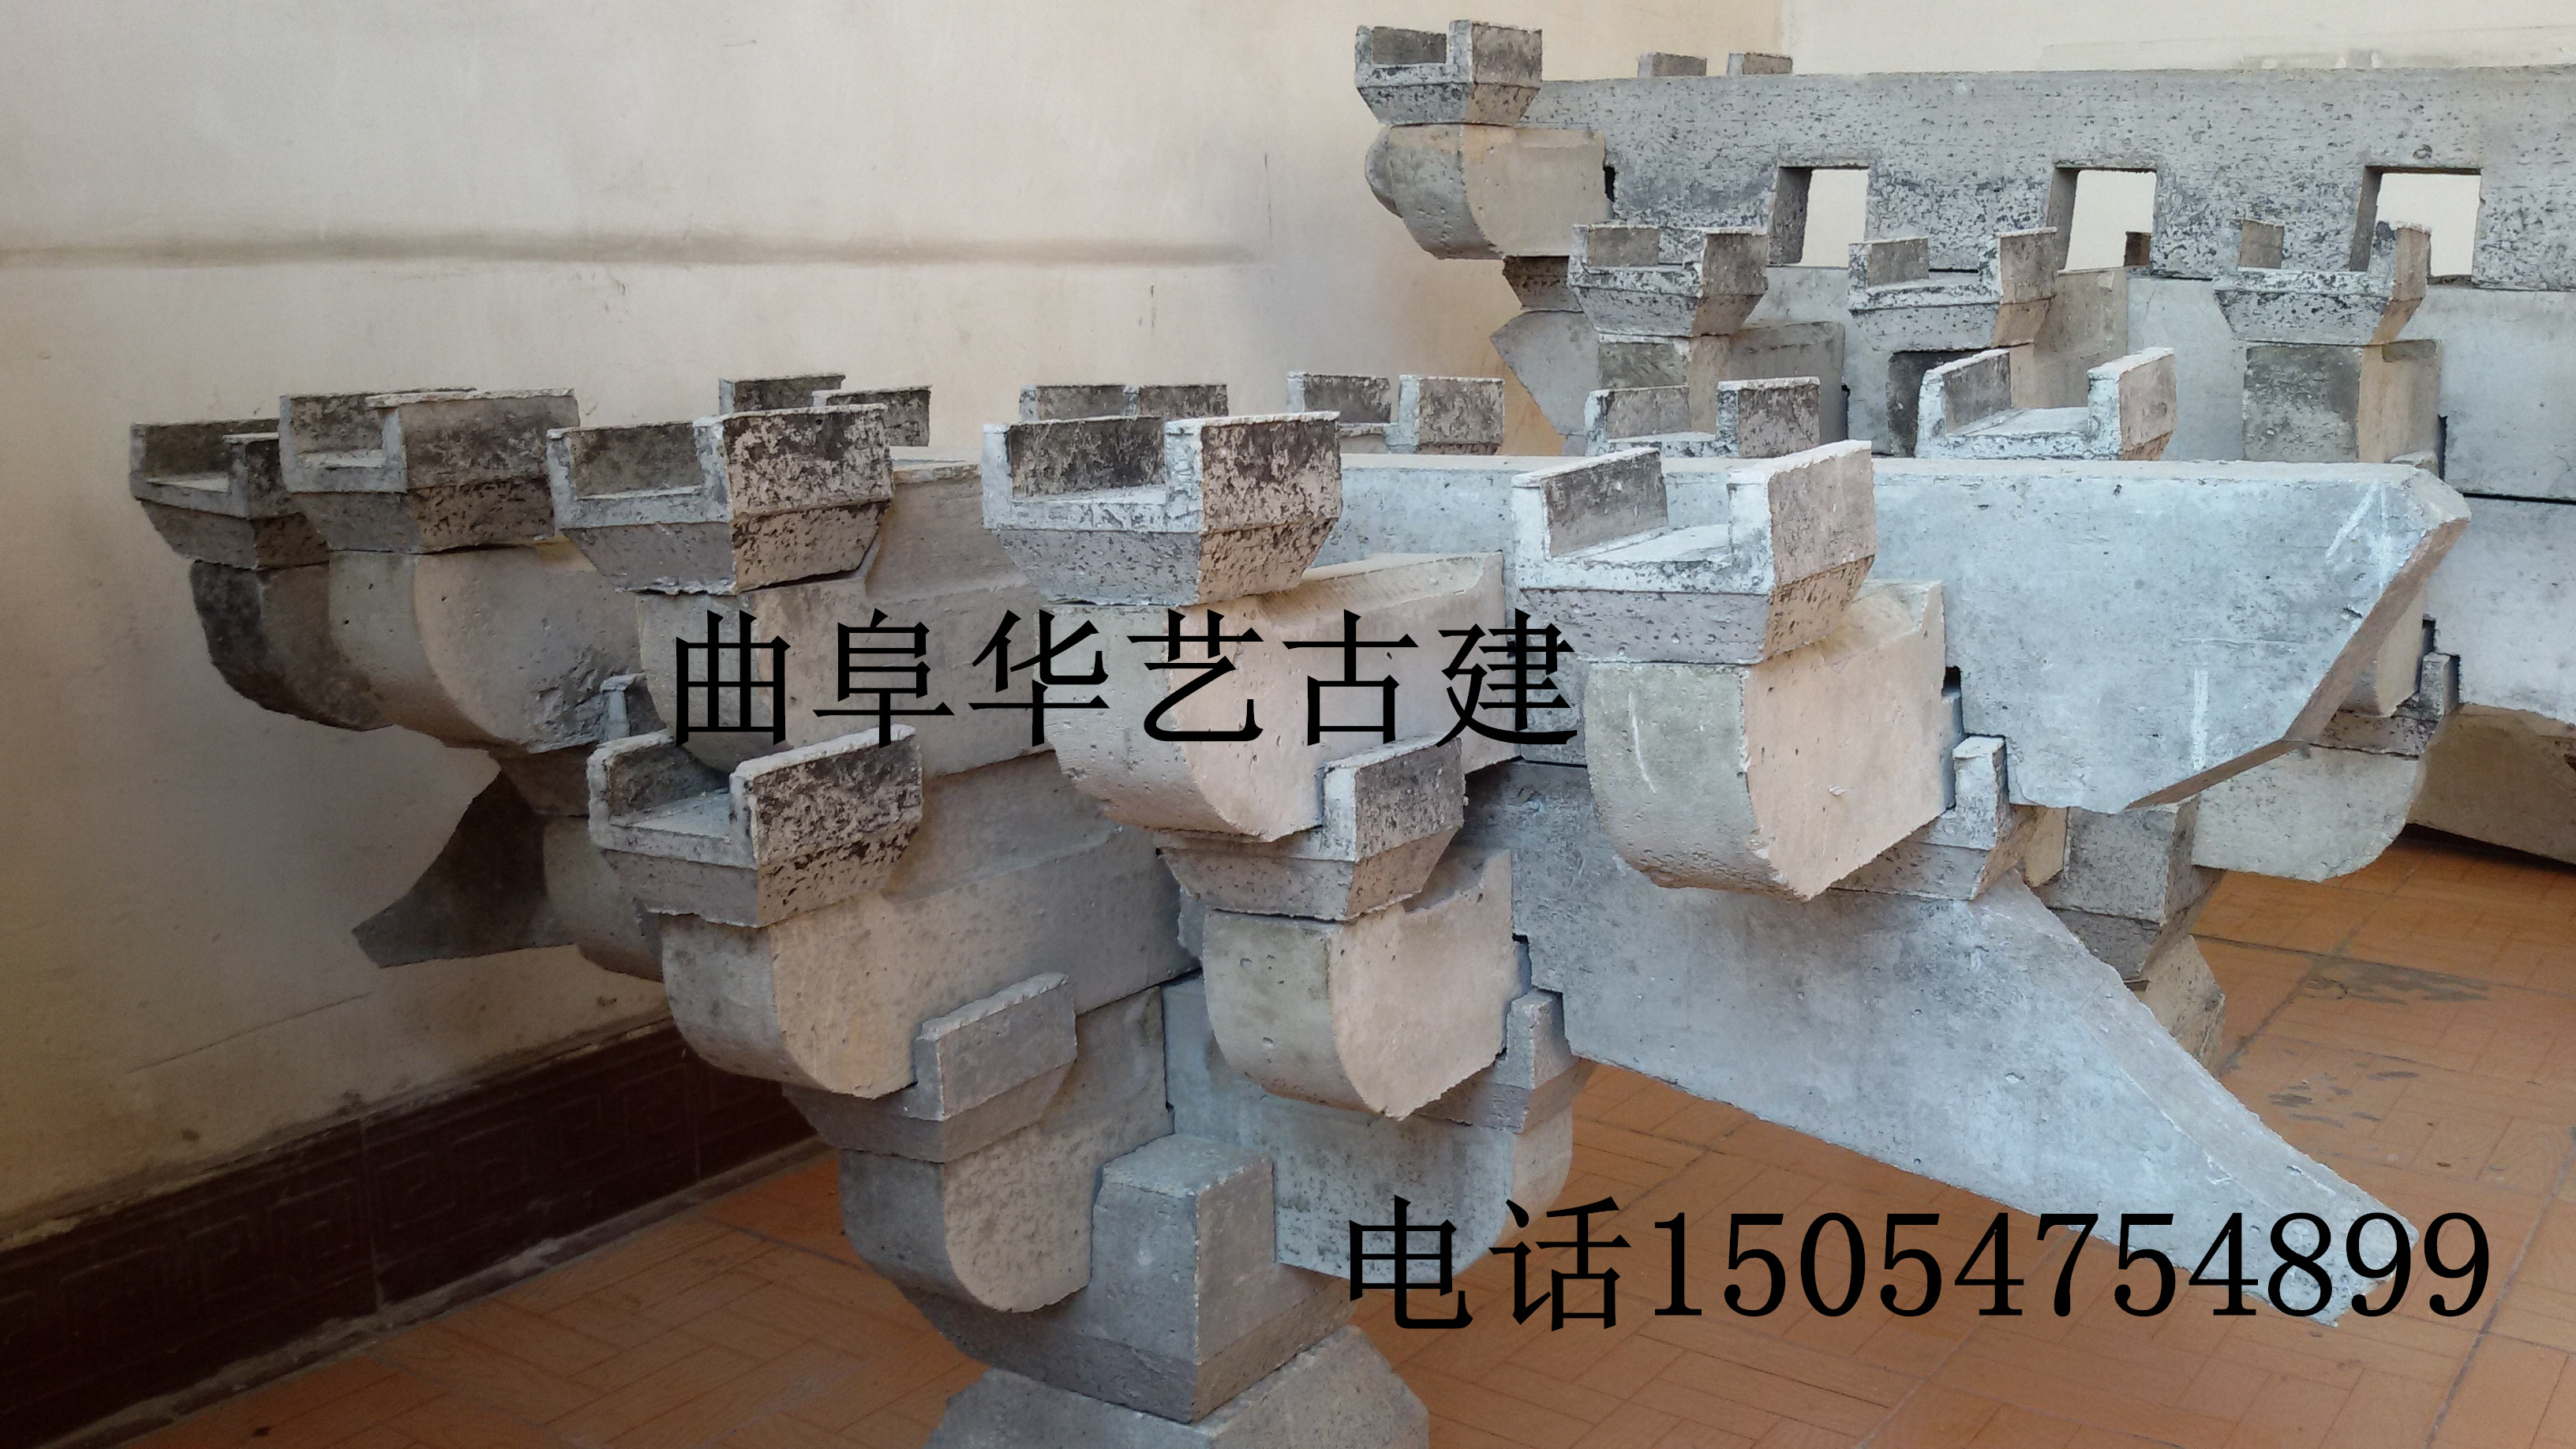 其他景观材料 古建构件斗拱制作 江苏水泥雀替厂家6